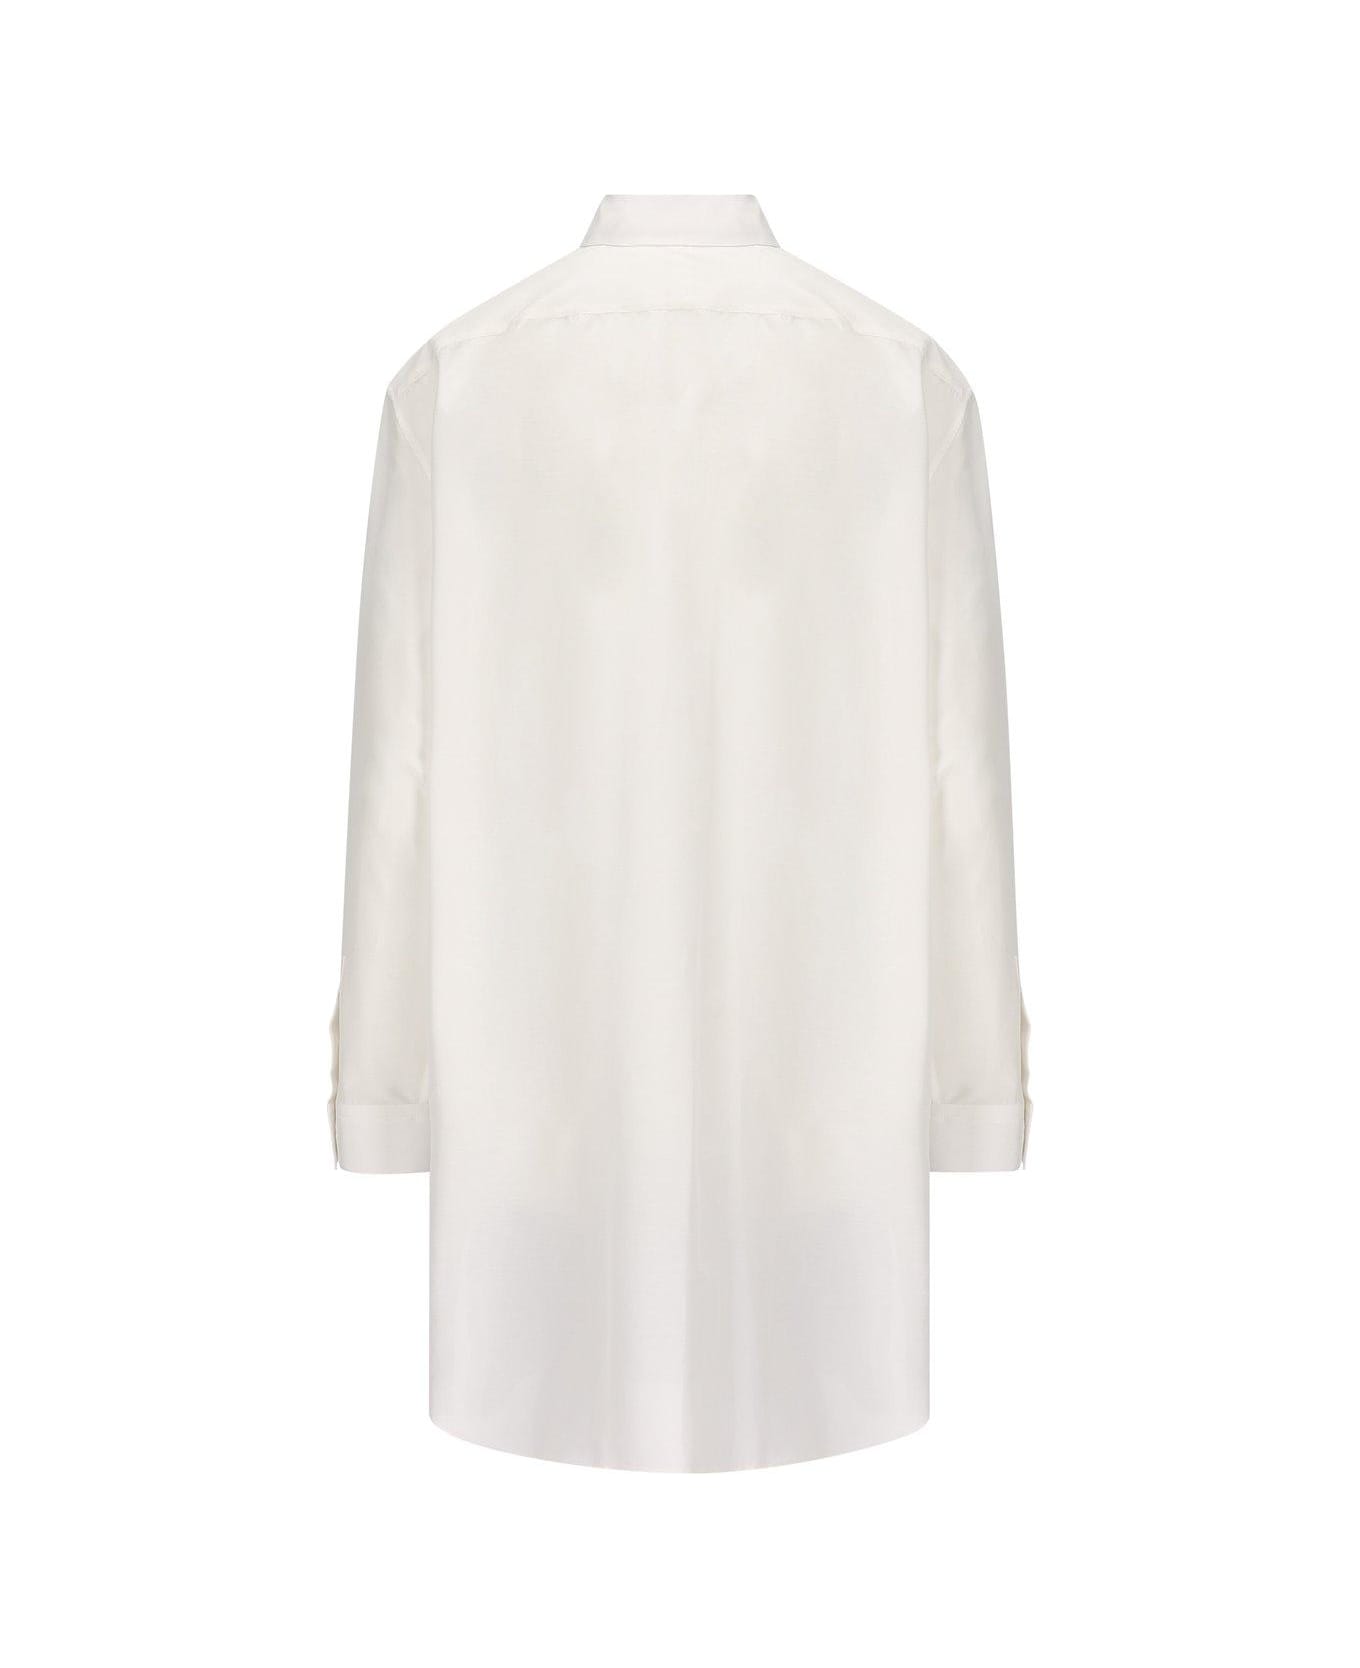 Loewe Double Layered Shirt Dress - White シャツ